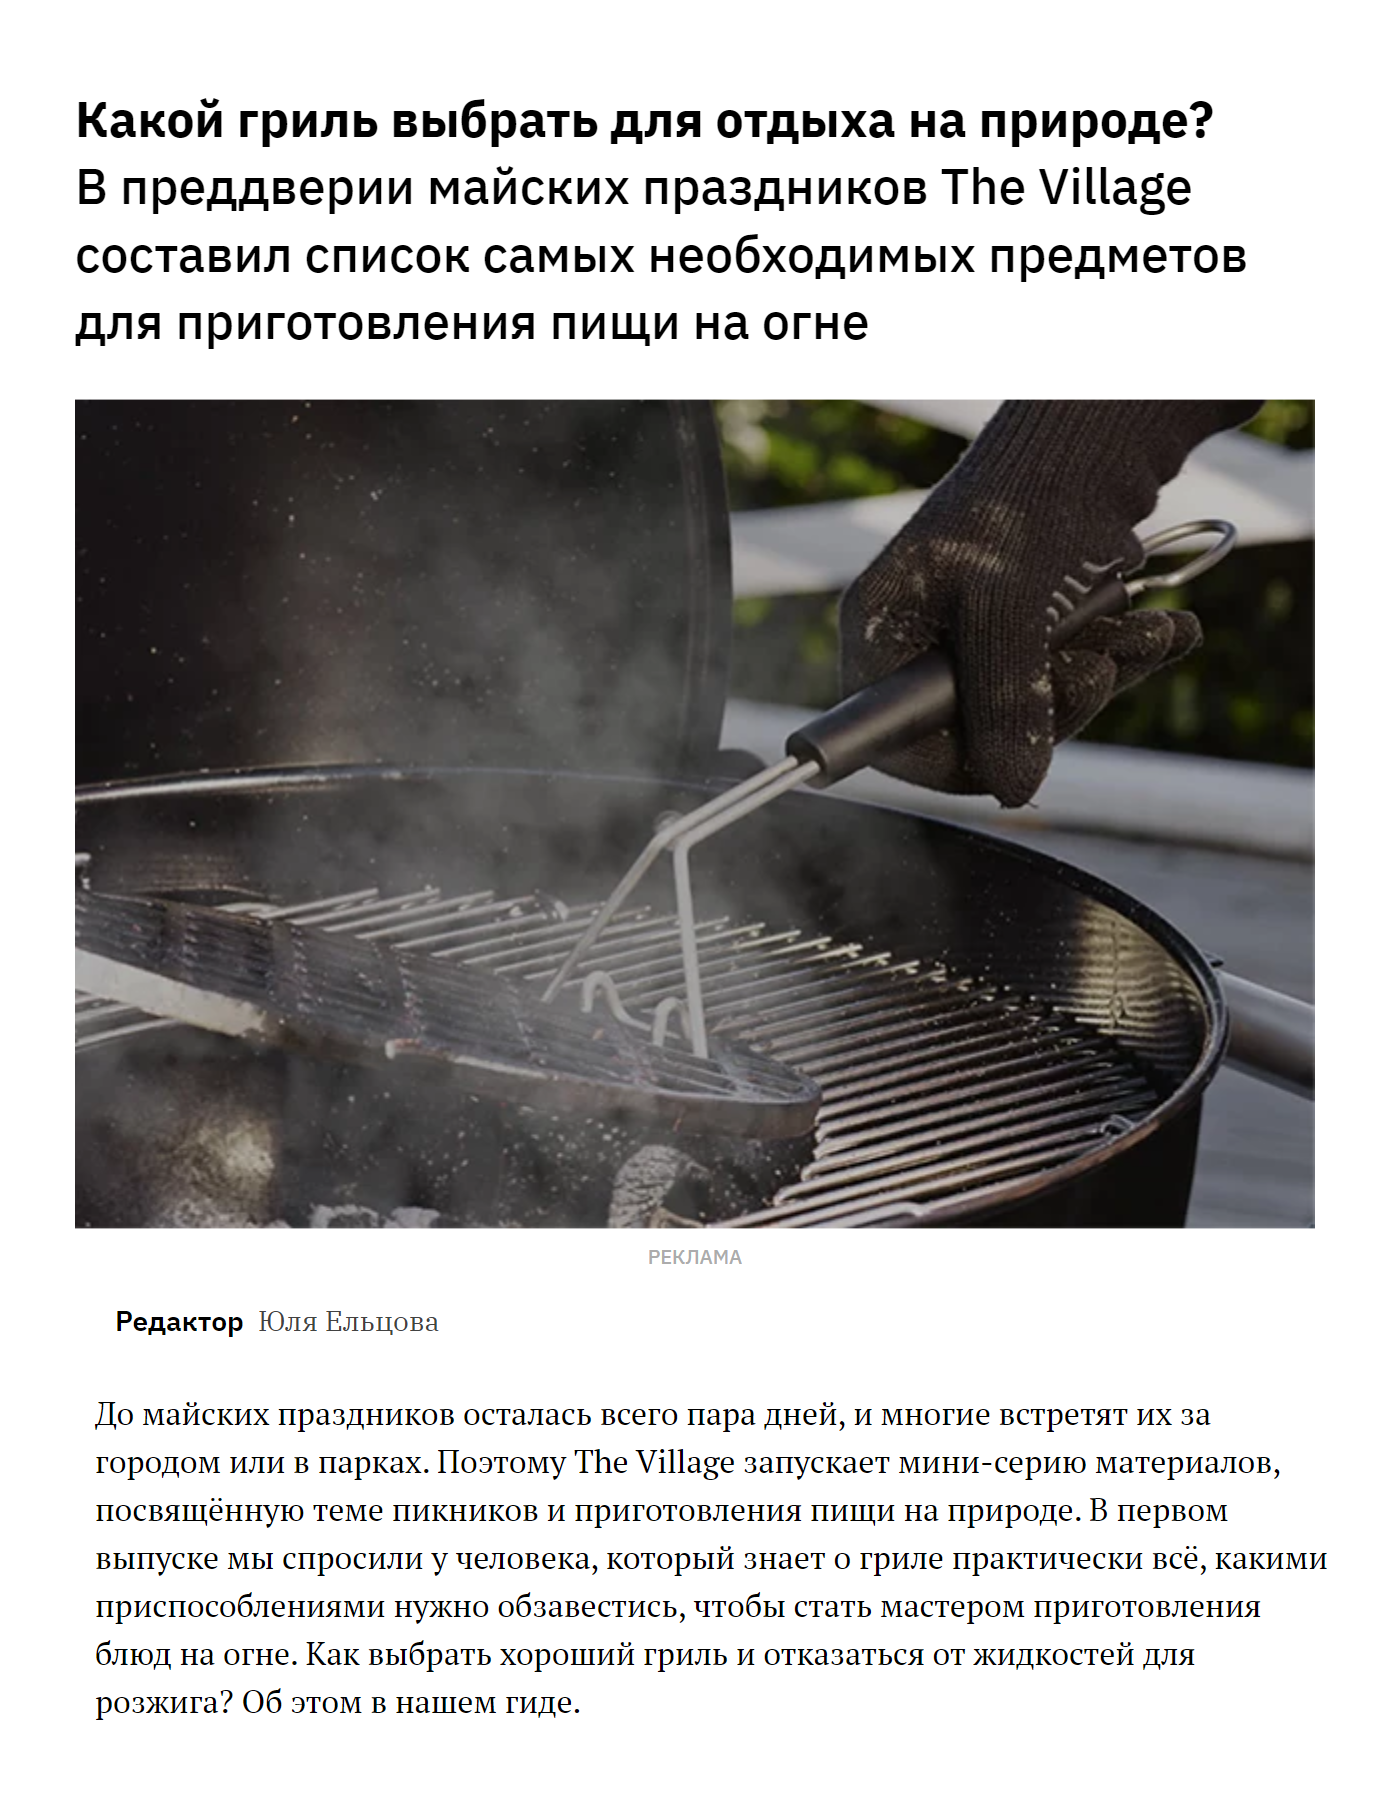 Статья на The Village, где мы рассказывали, чем отличаются разные грили, и подбирали аксессуары для готовки